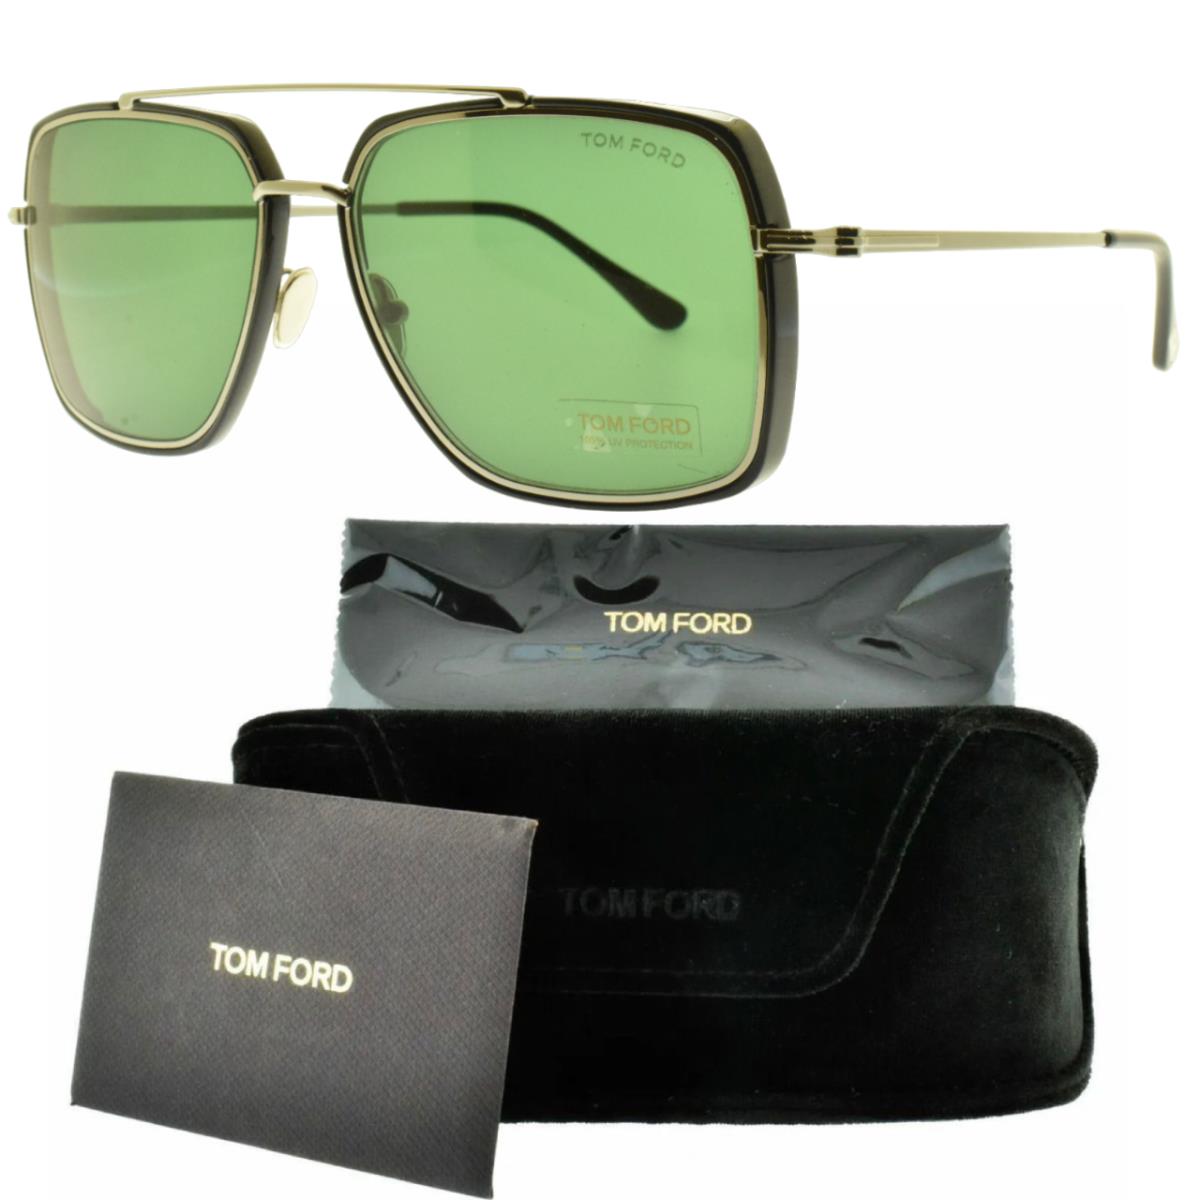 Tom Ford 0750 01N Silver/black Rectangle Full Rim Mens Sunglasses